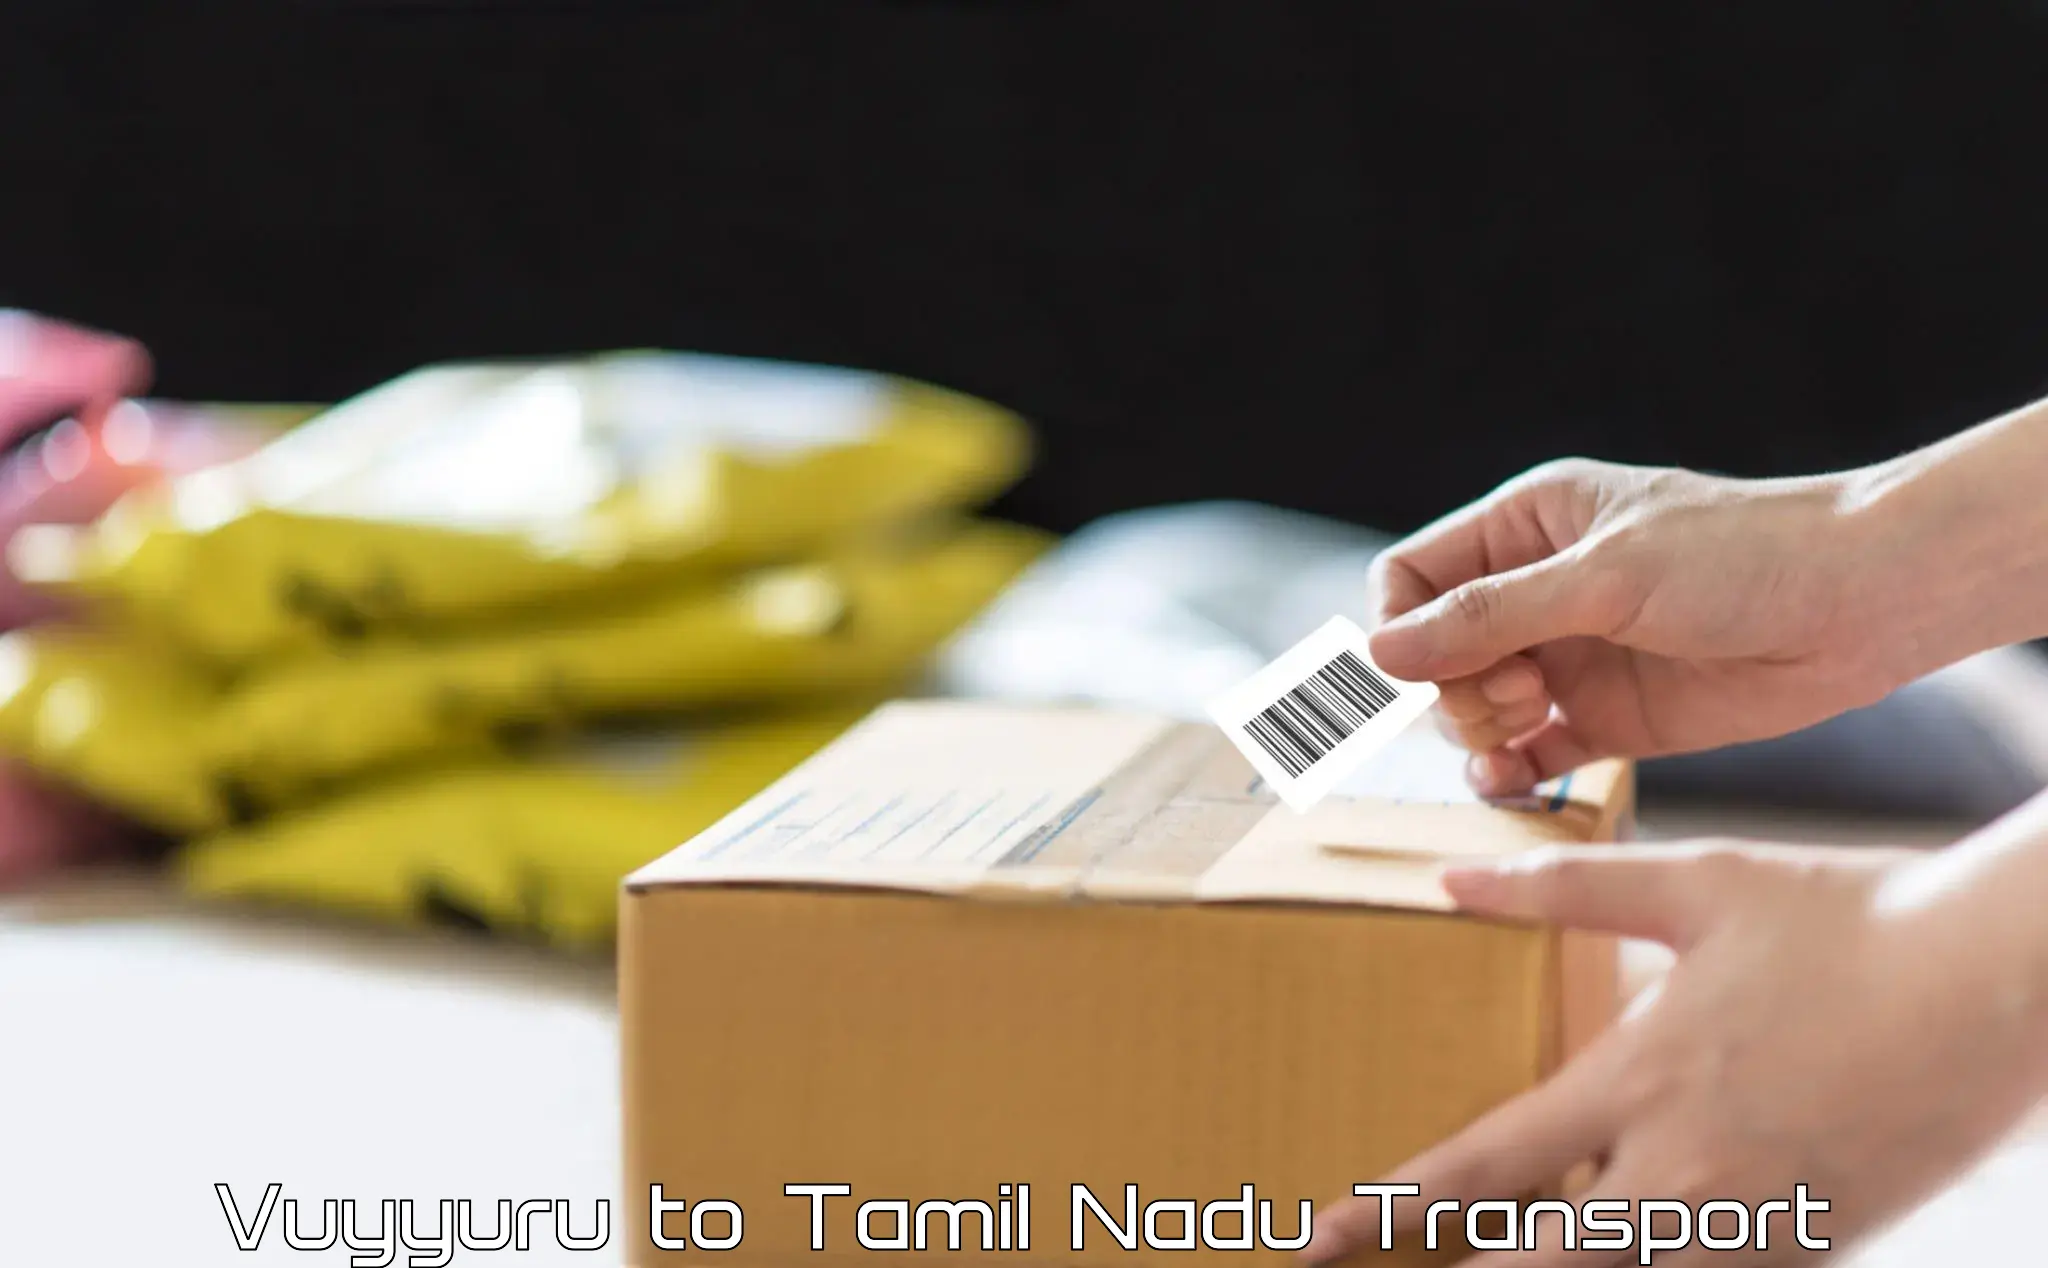 Road transport online services in Vuyyuru to Tamil Nadu